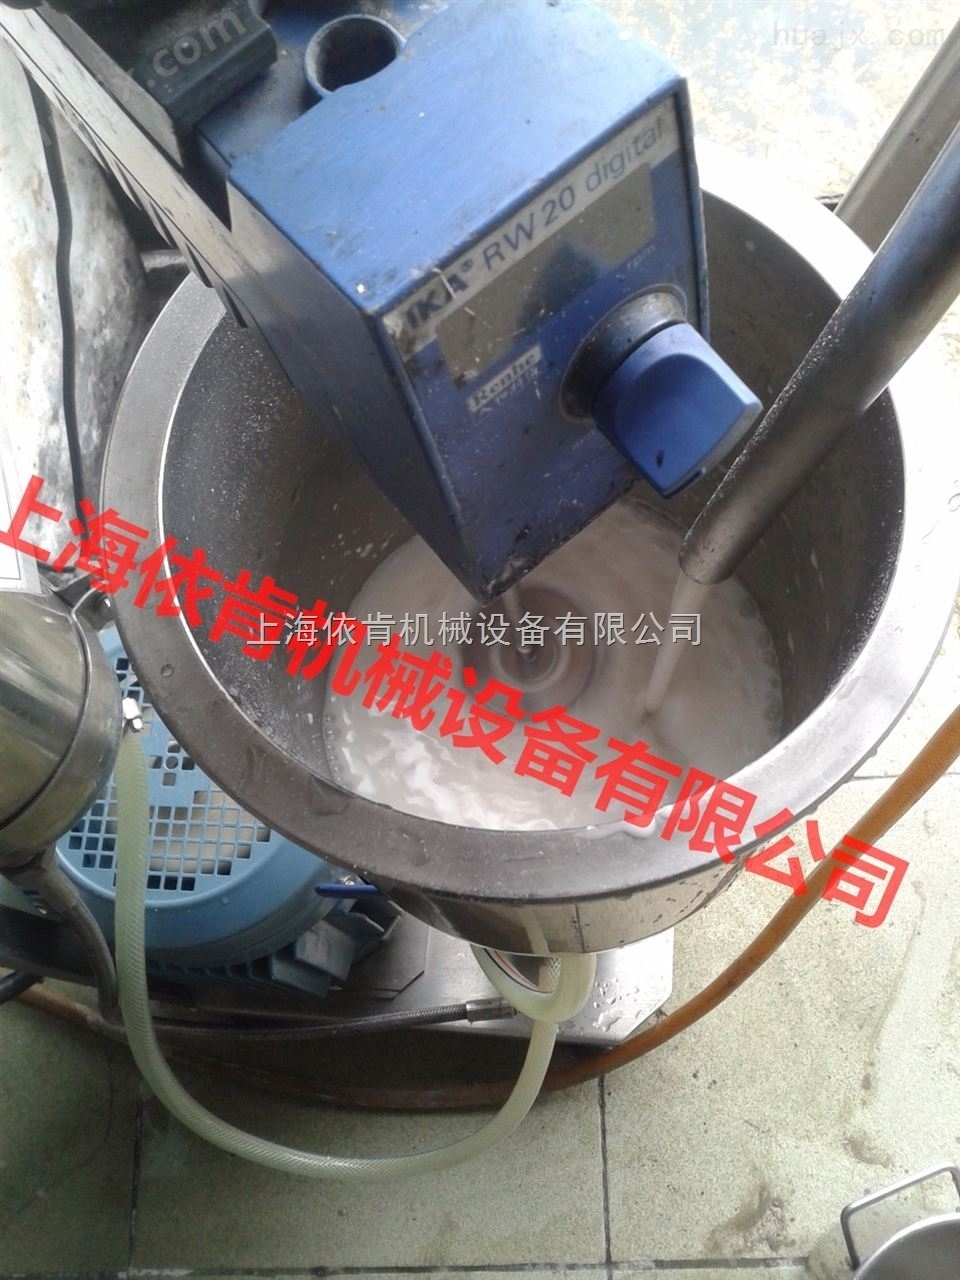 上海浦东碳纳米管分散机